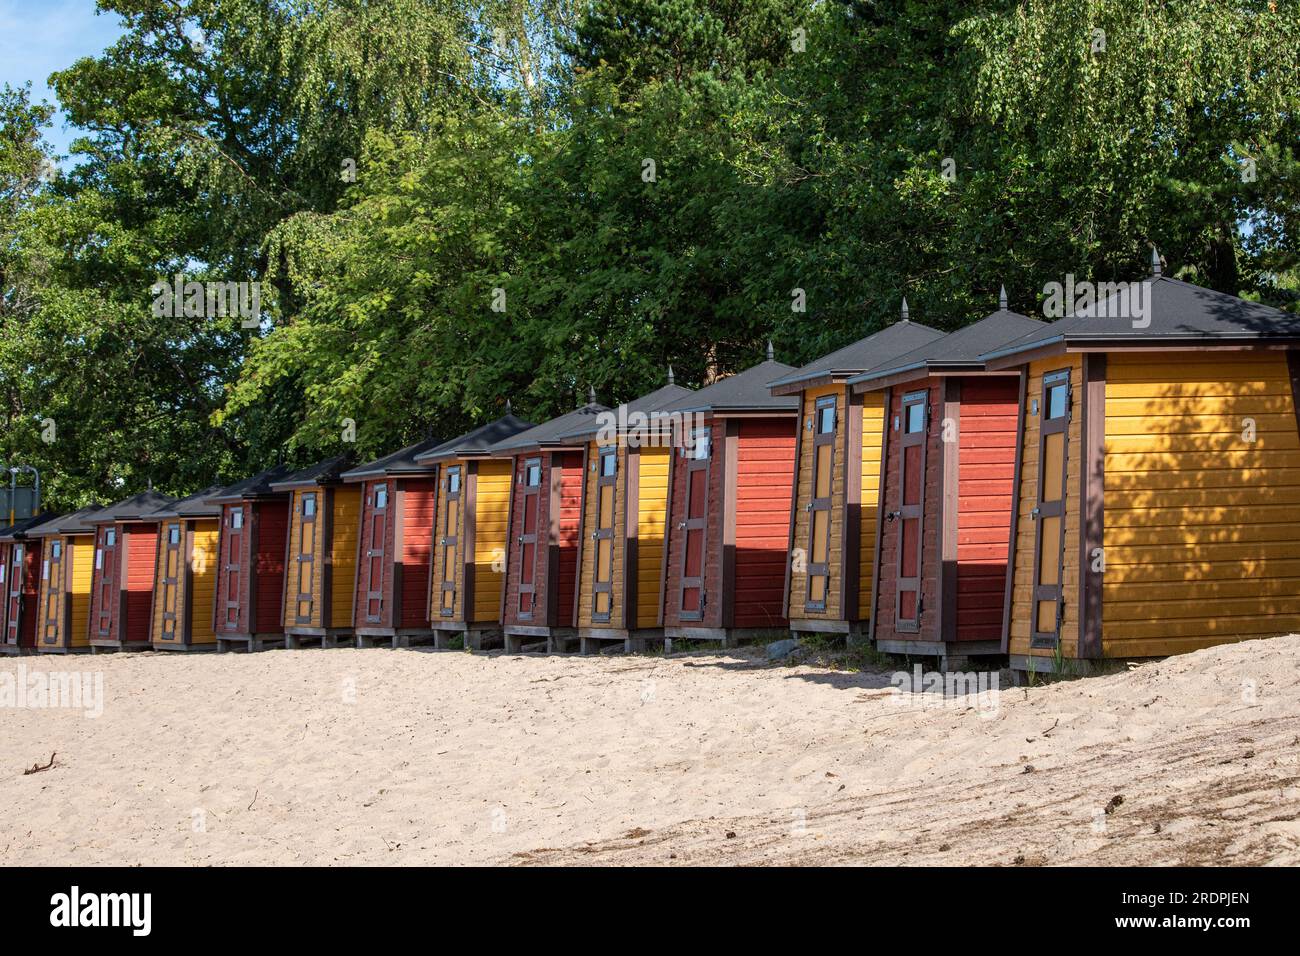 Lunga fila di spogliatoi sulla spiaggia, capanne sulla spiaggia o cabine sulla spiaggia in una soleggiata giornata estiva sulla spiaggia dell'isola di Pihlajasaari a Helsinki, Finlandia Foto Stock